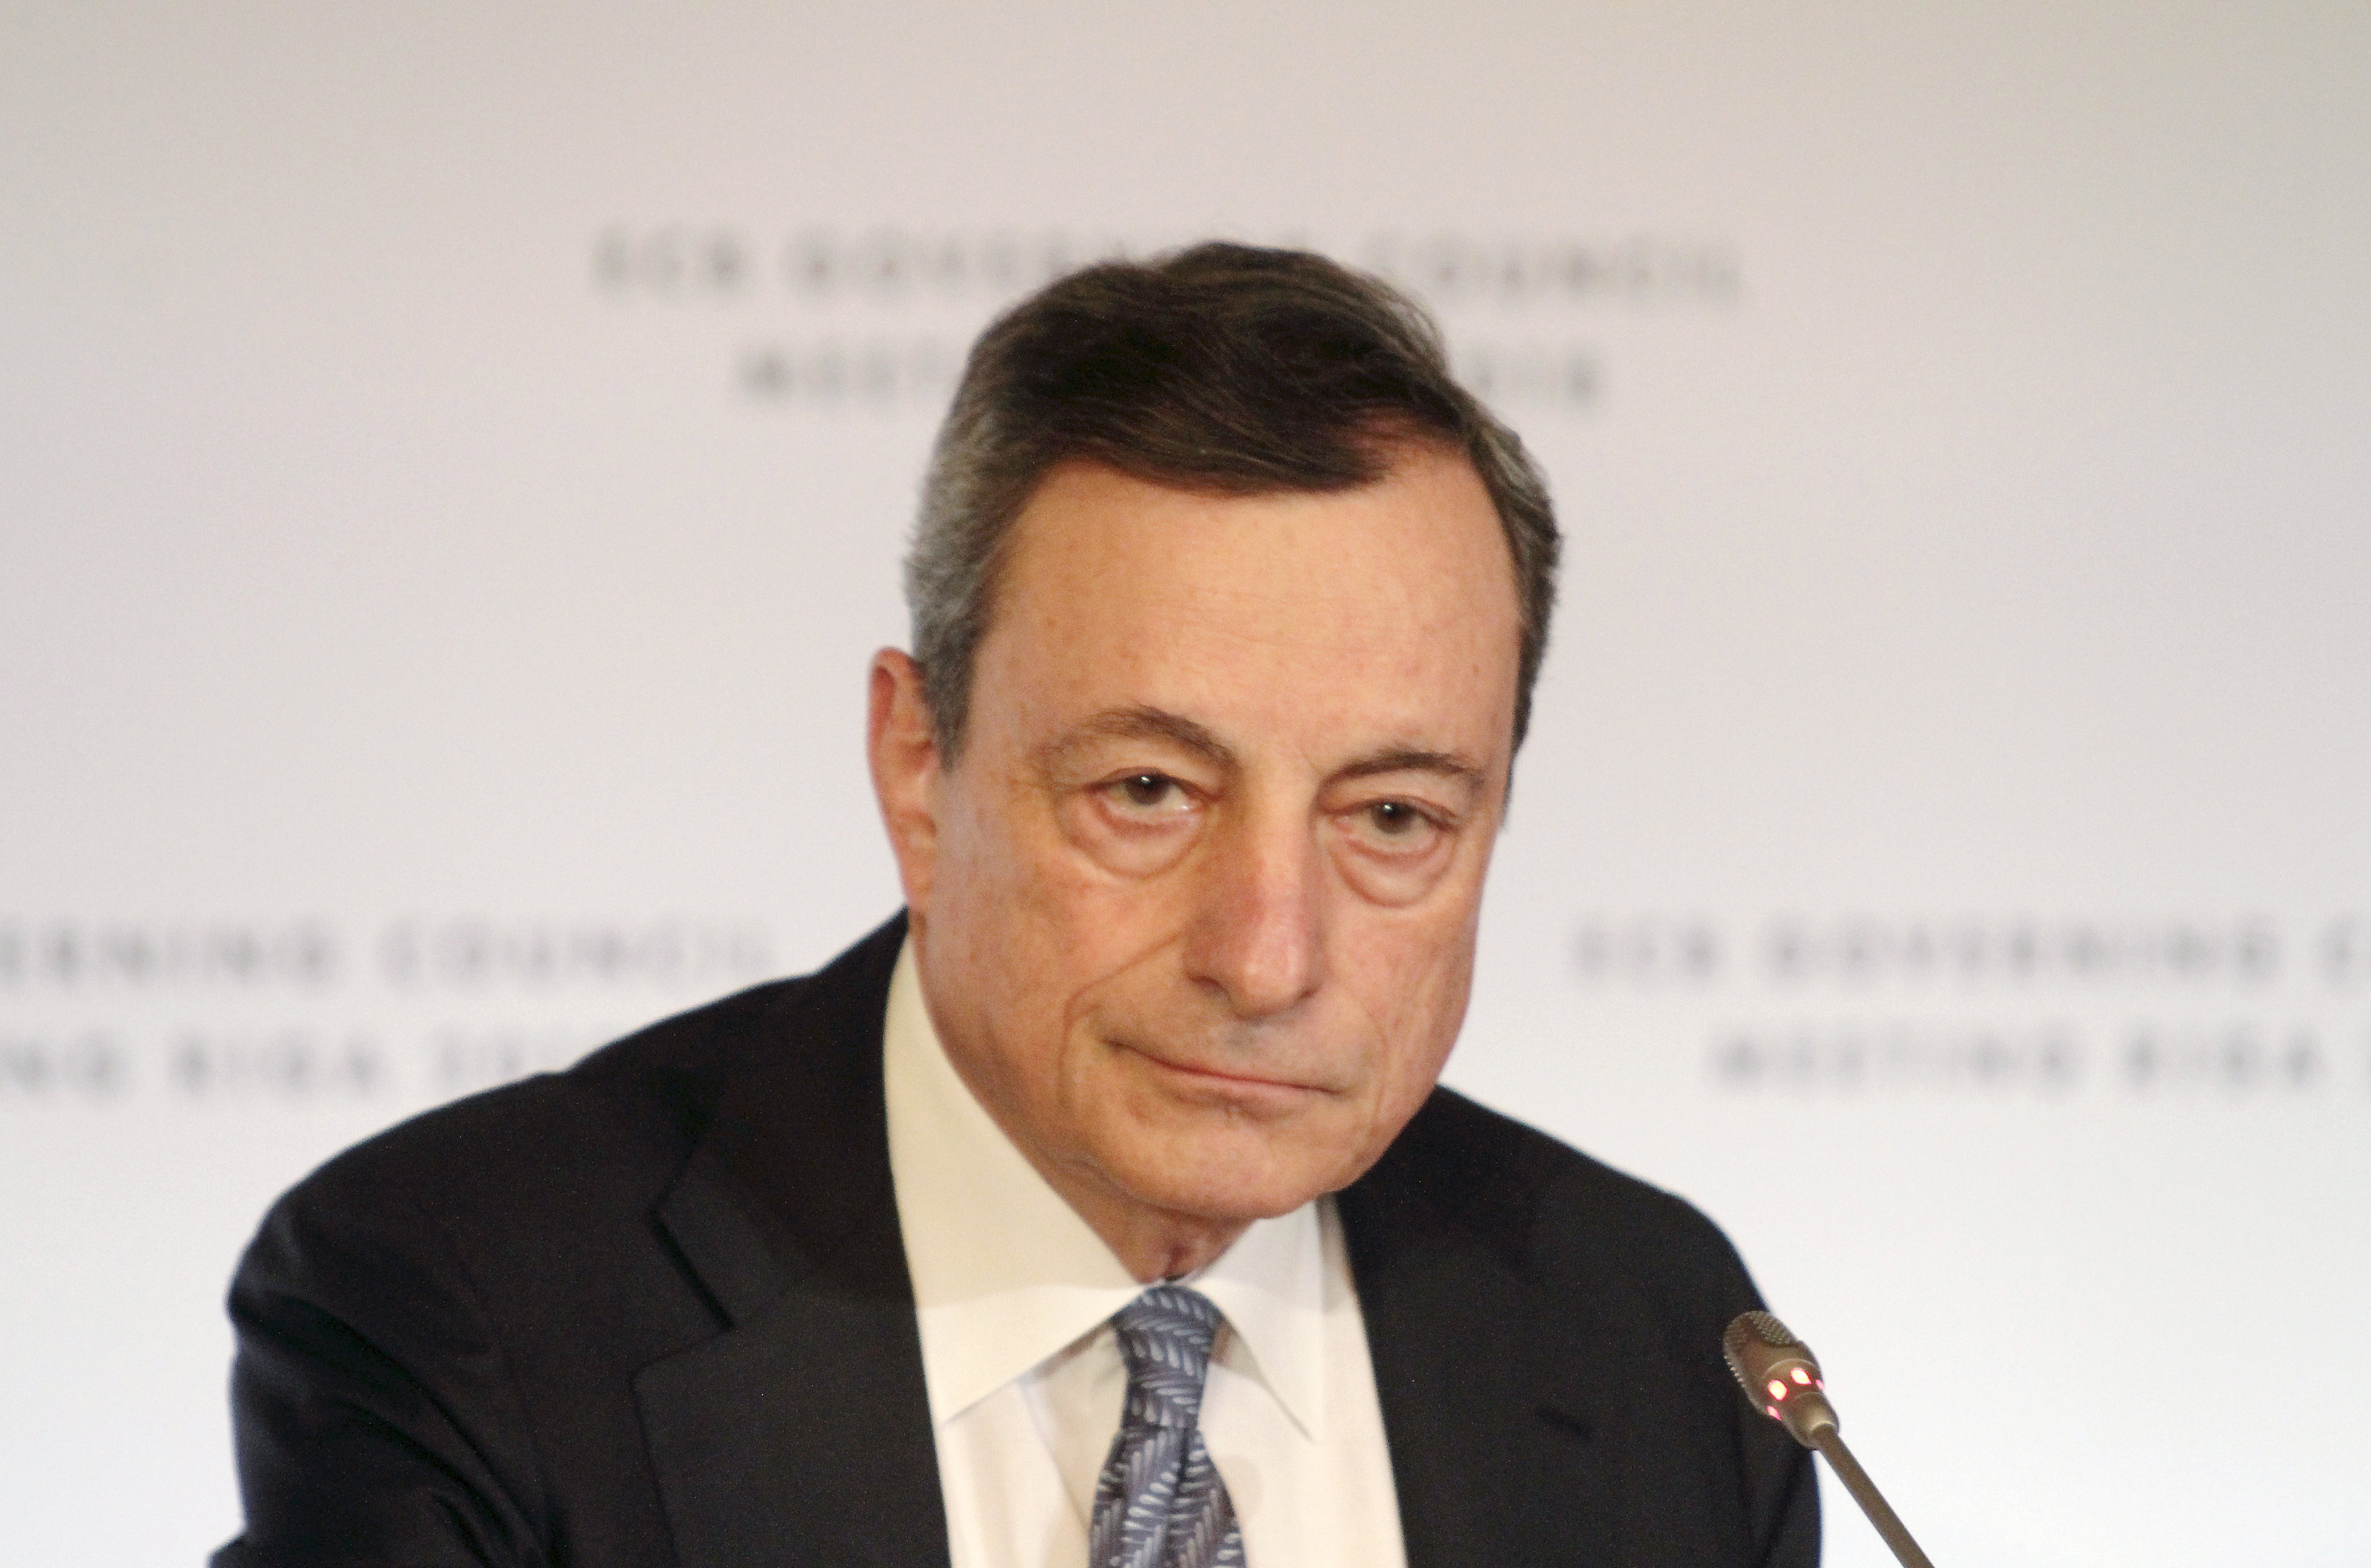 Incerteza no crescimento da zona euro mantém BCE prudente